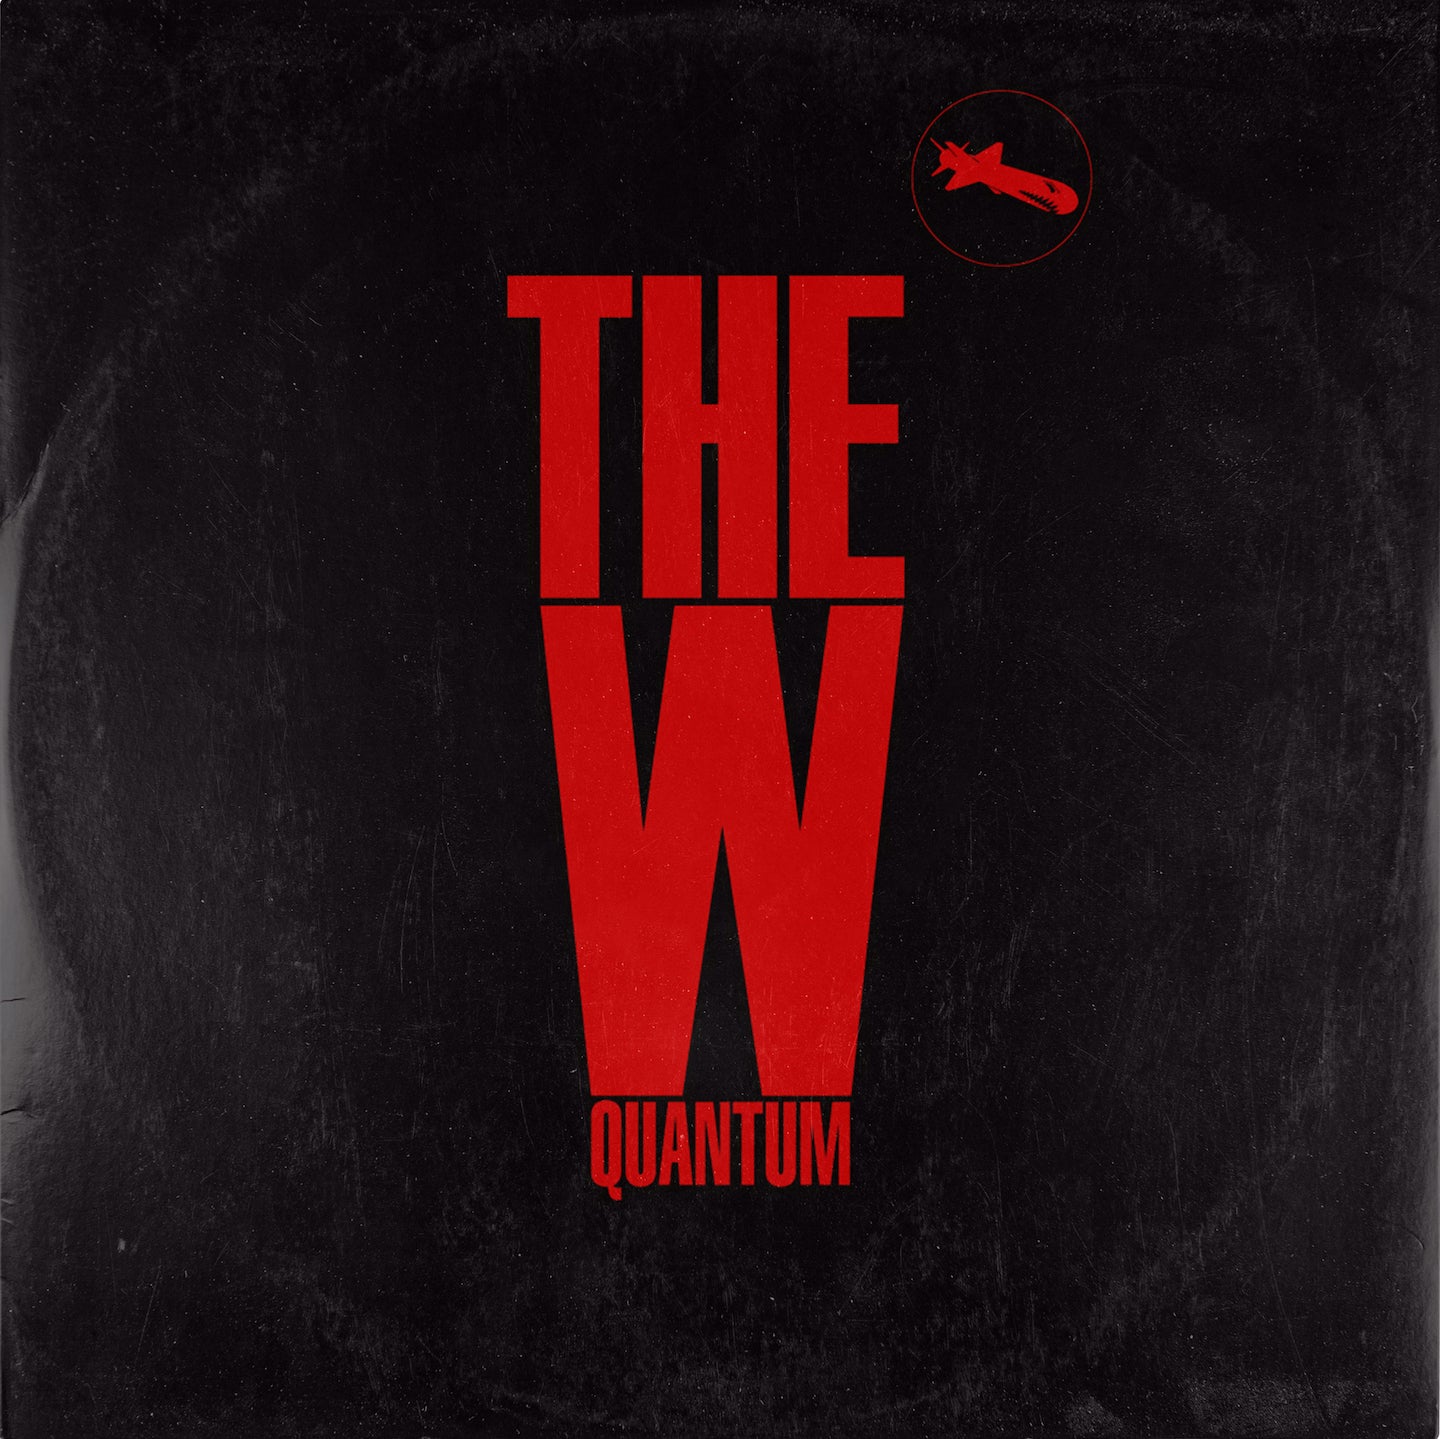 The W - Quantum EP